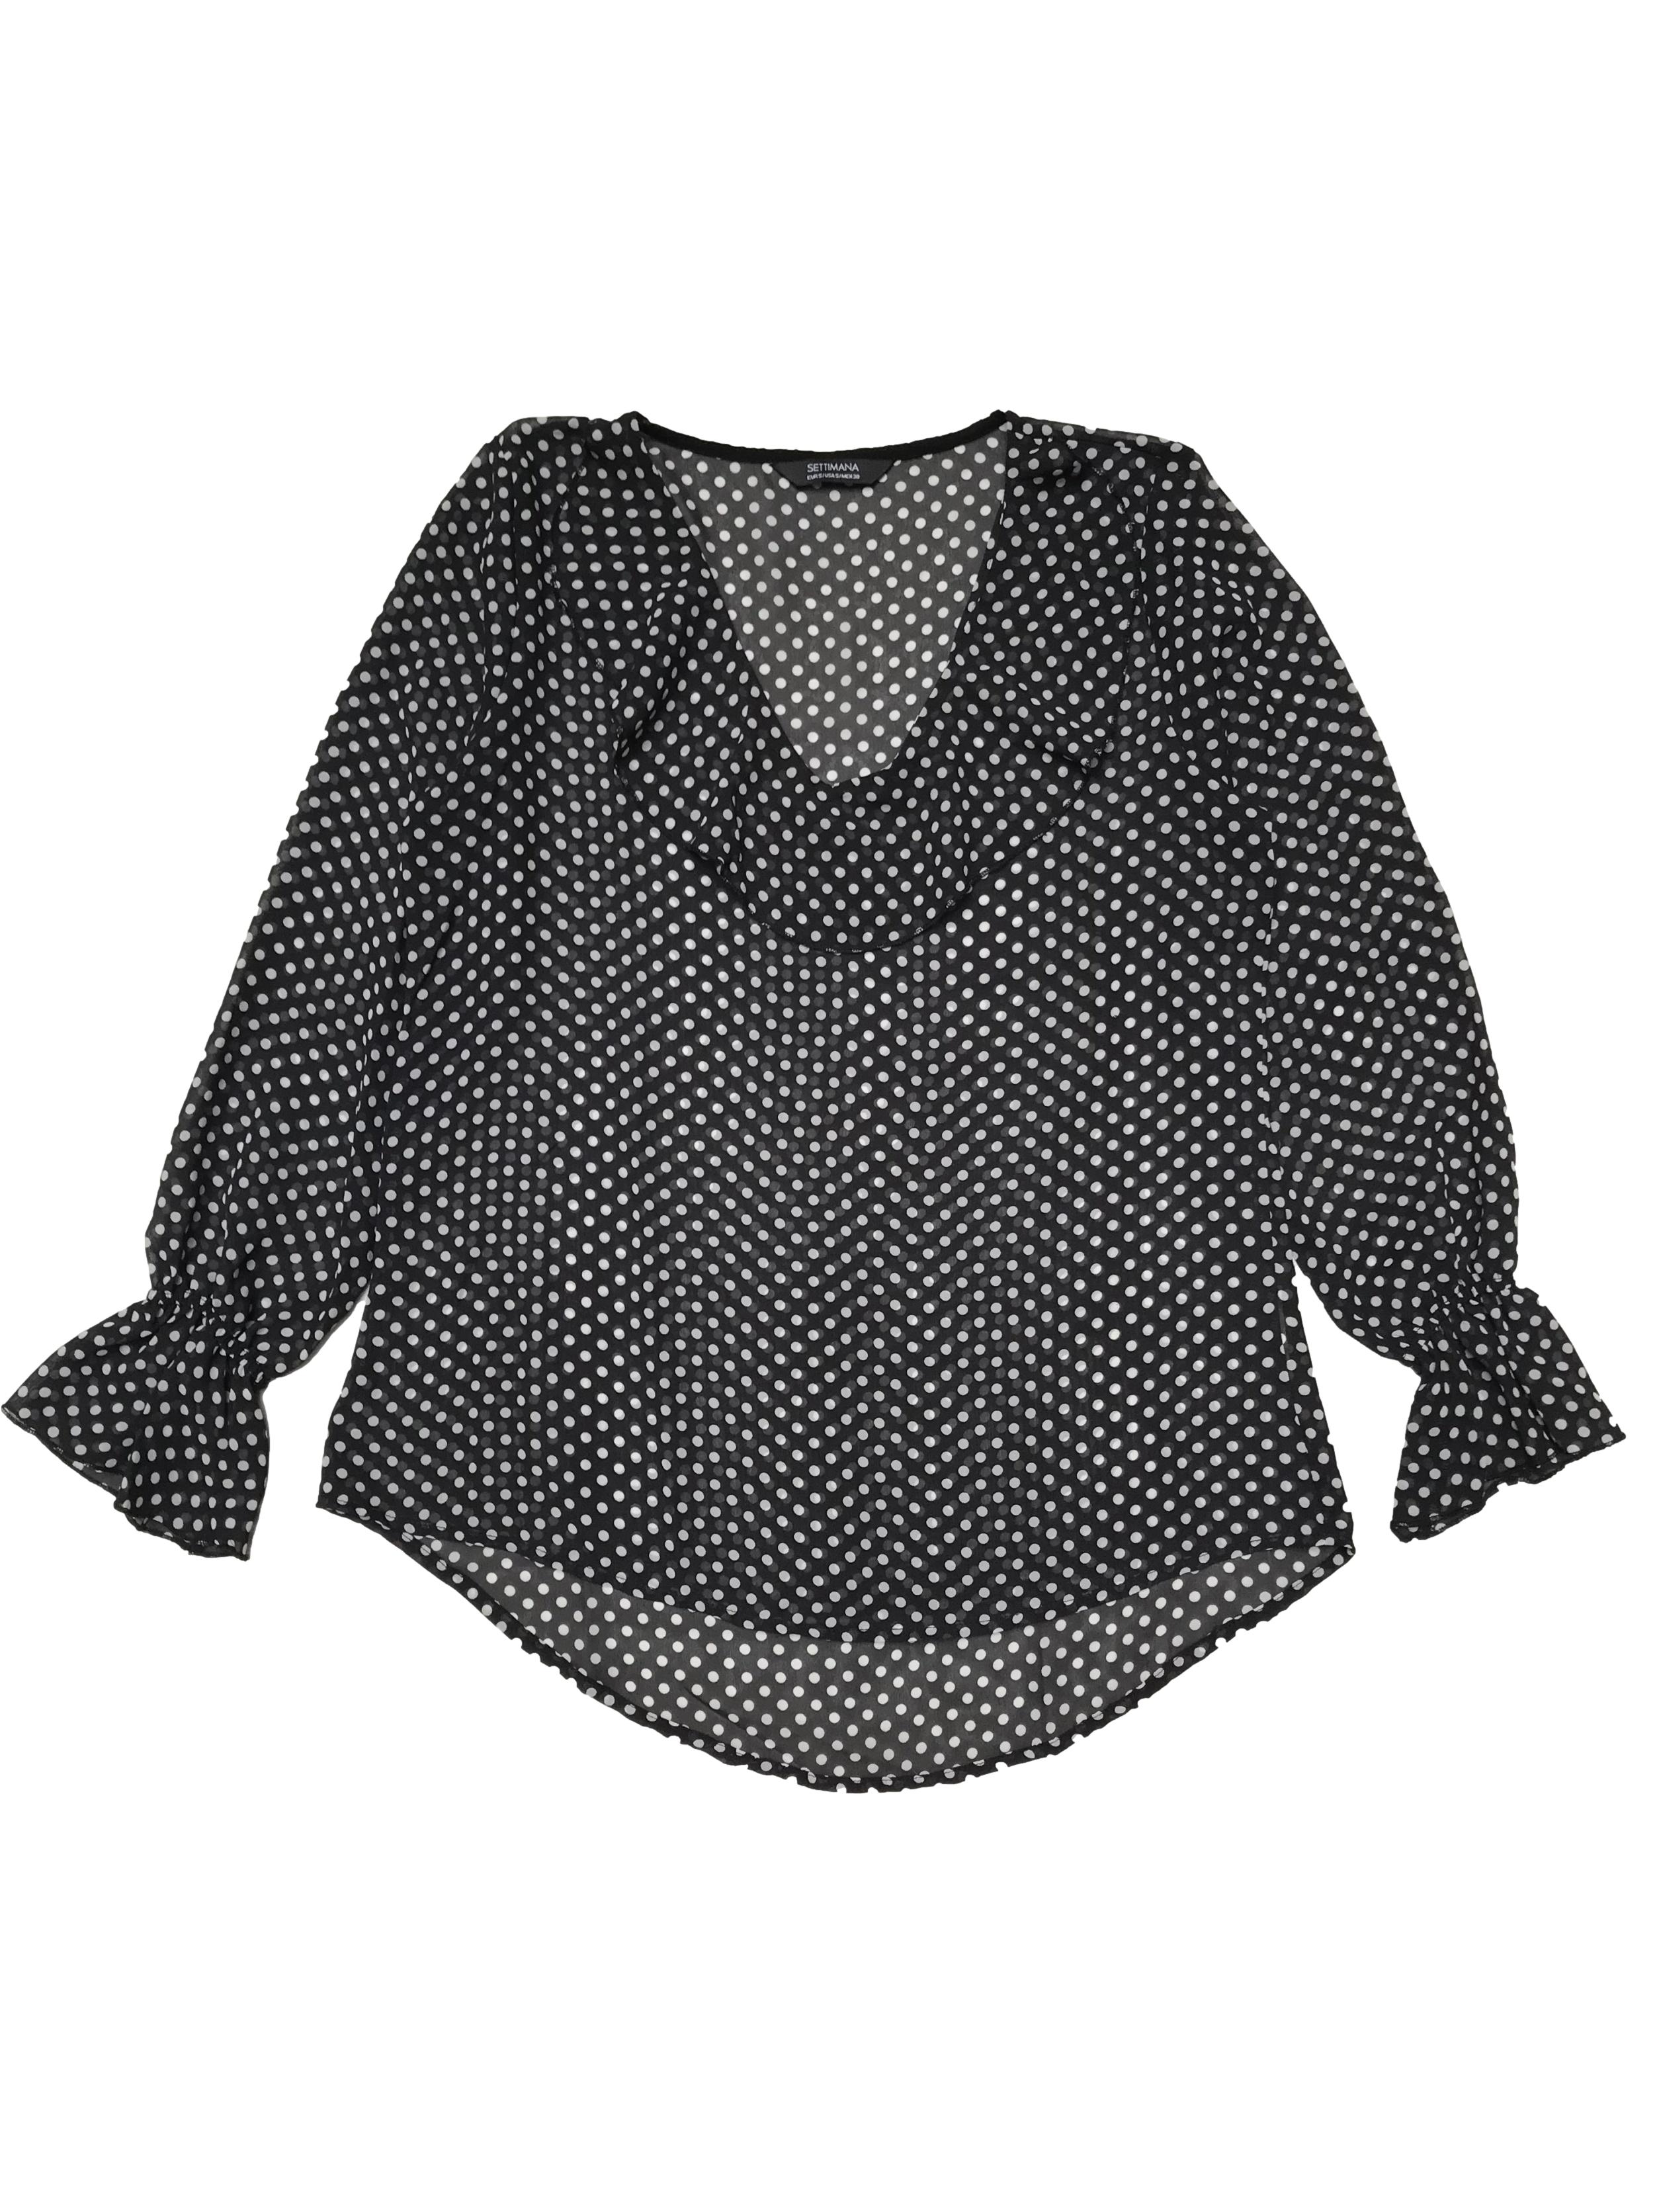 Blusa Settimana de gasa negra con lunares blancos, cuello en V con volante, elástico en los puños. Ancho 98cm Largo 60-70cm